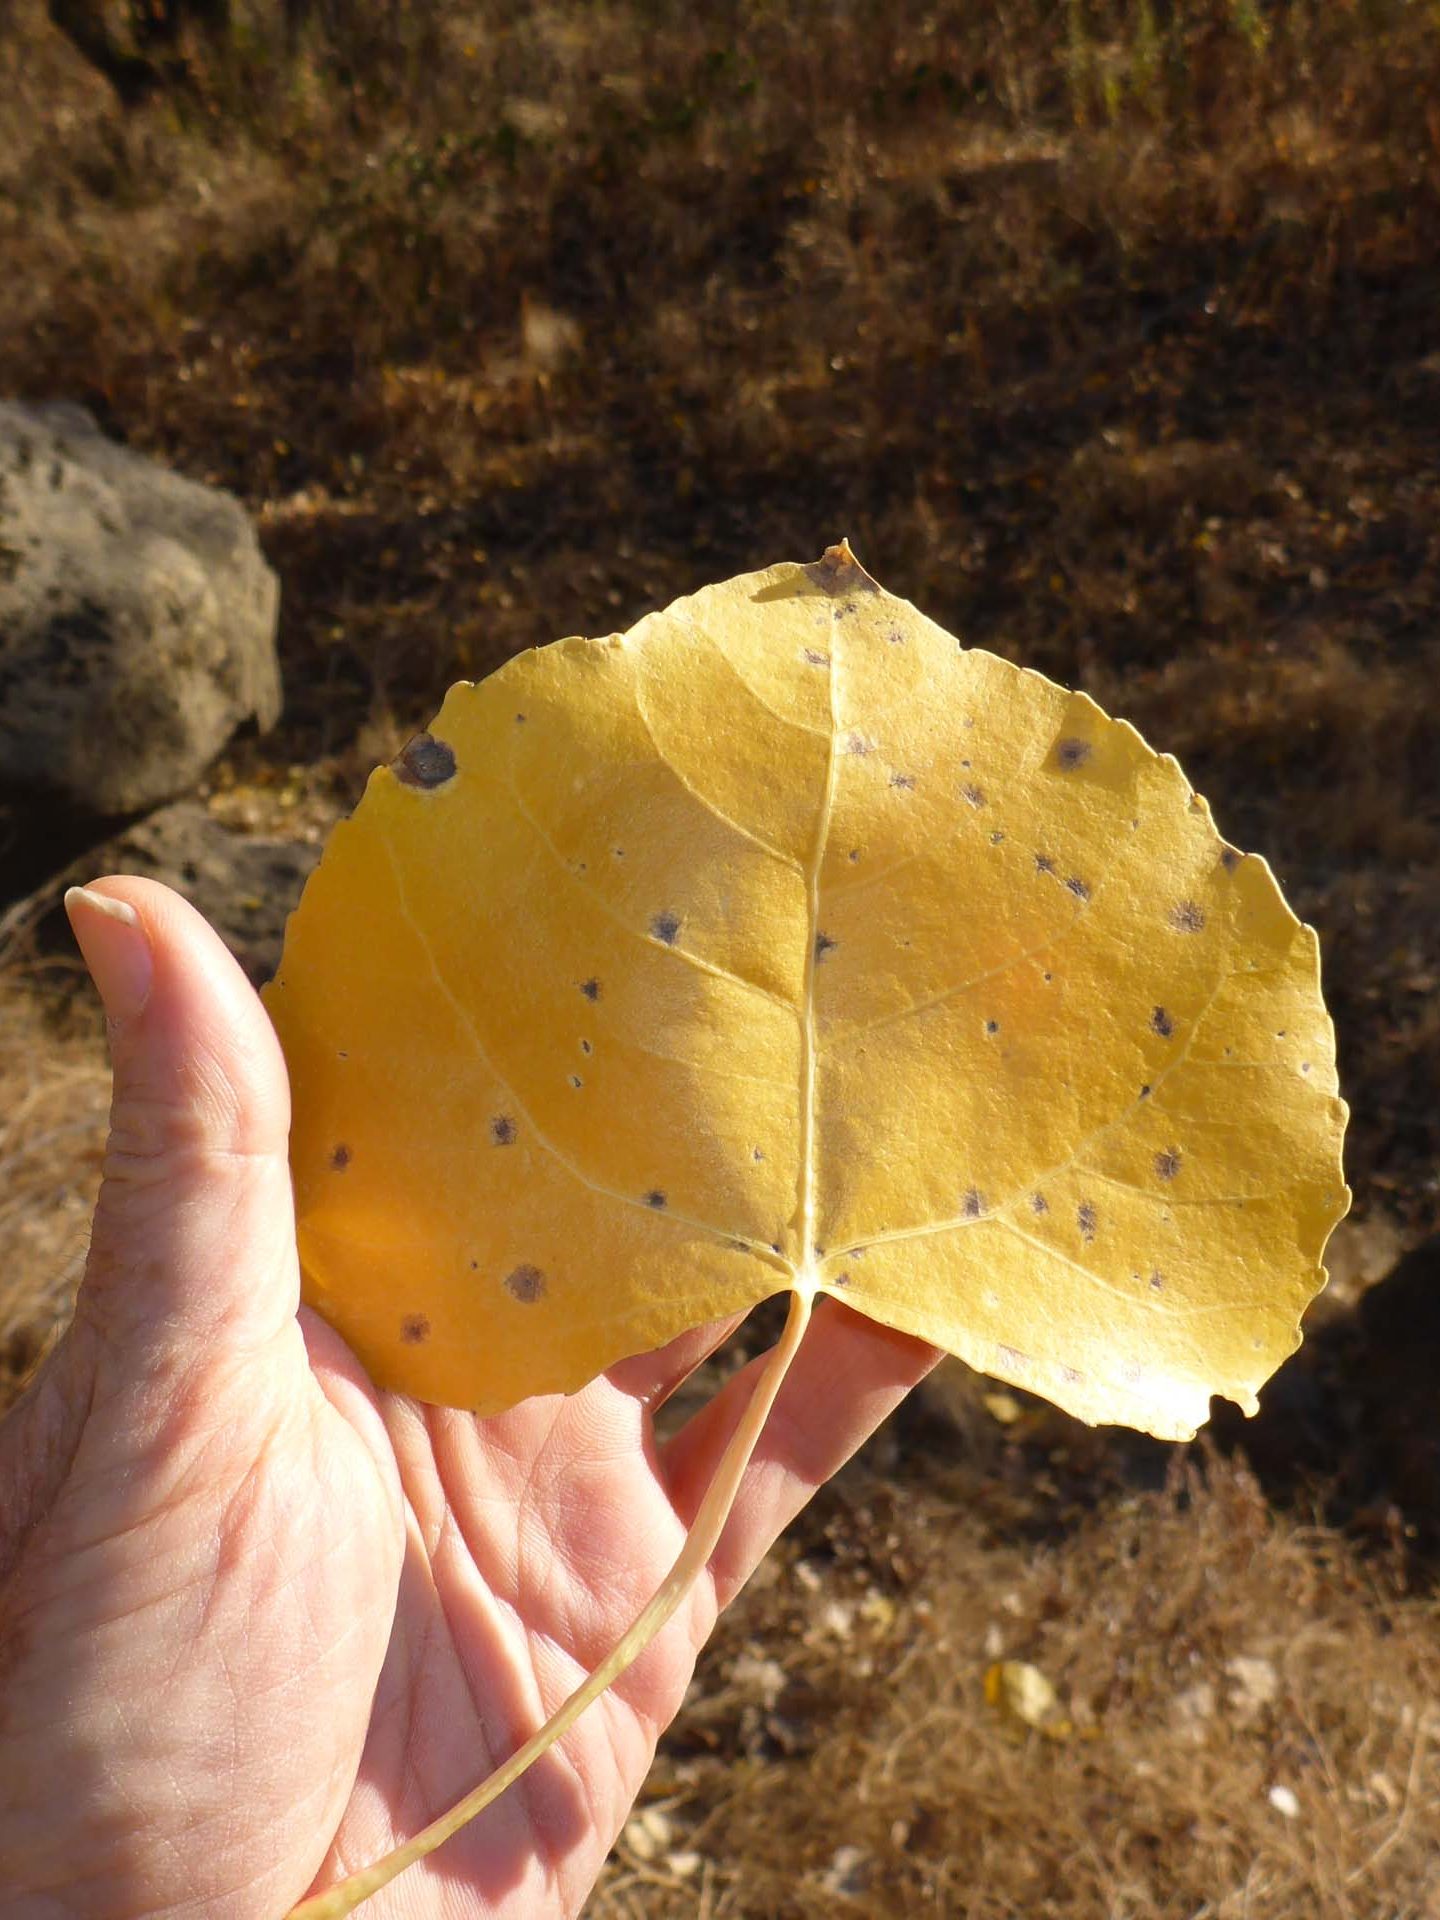 Fremont's cottonwood leaf. D. Burk.